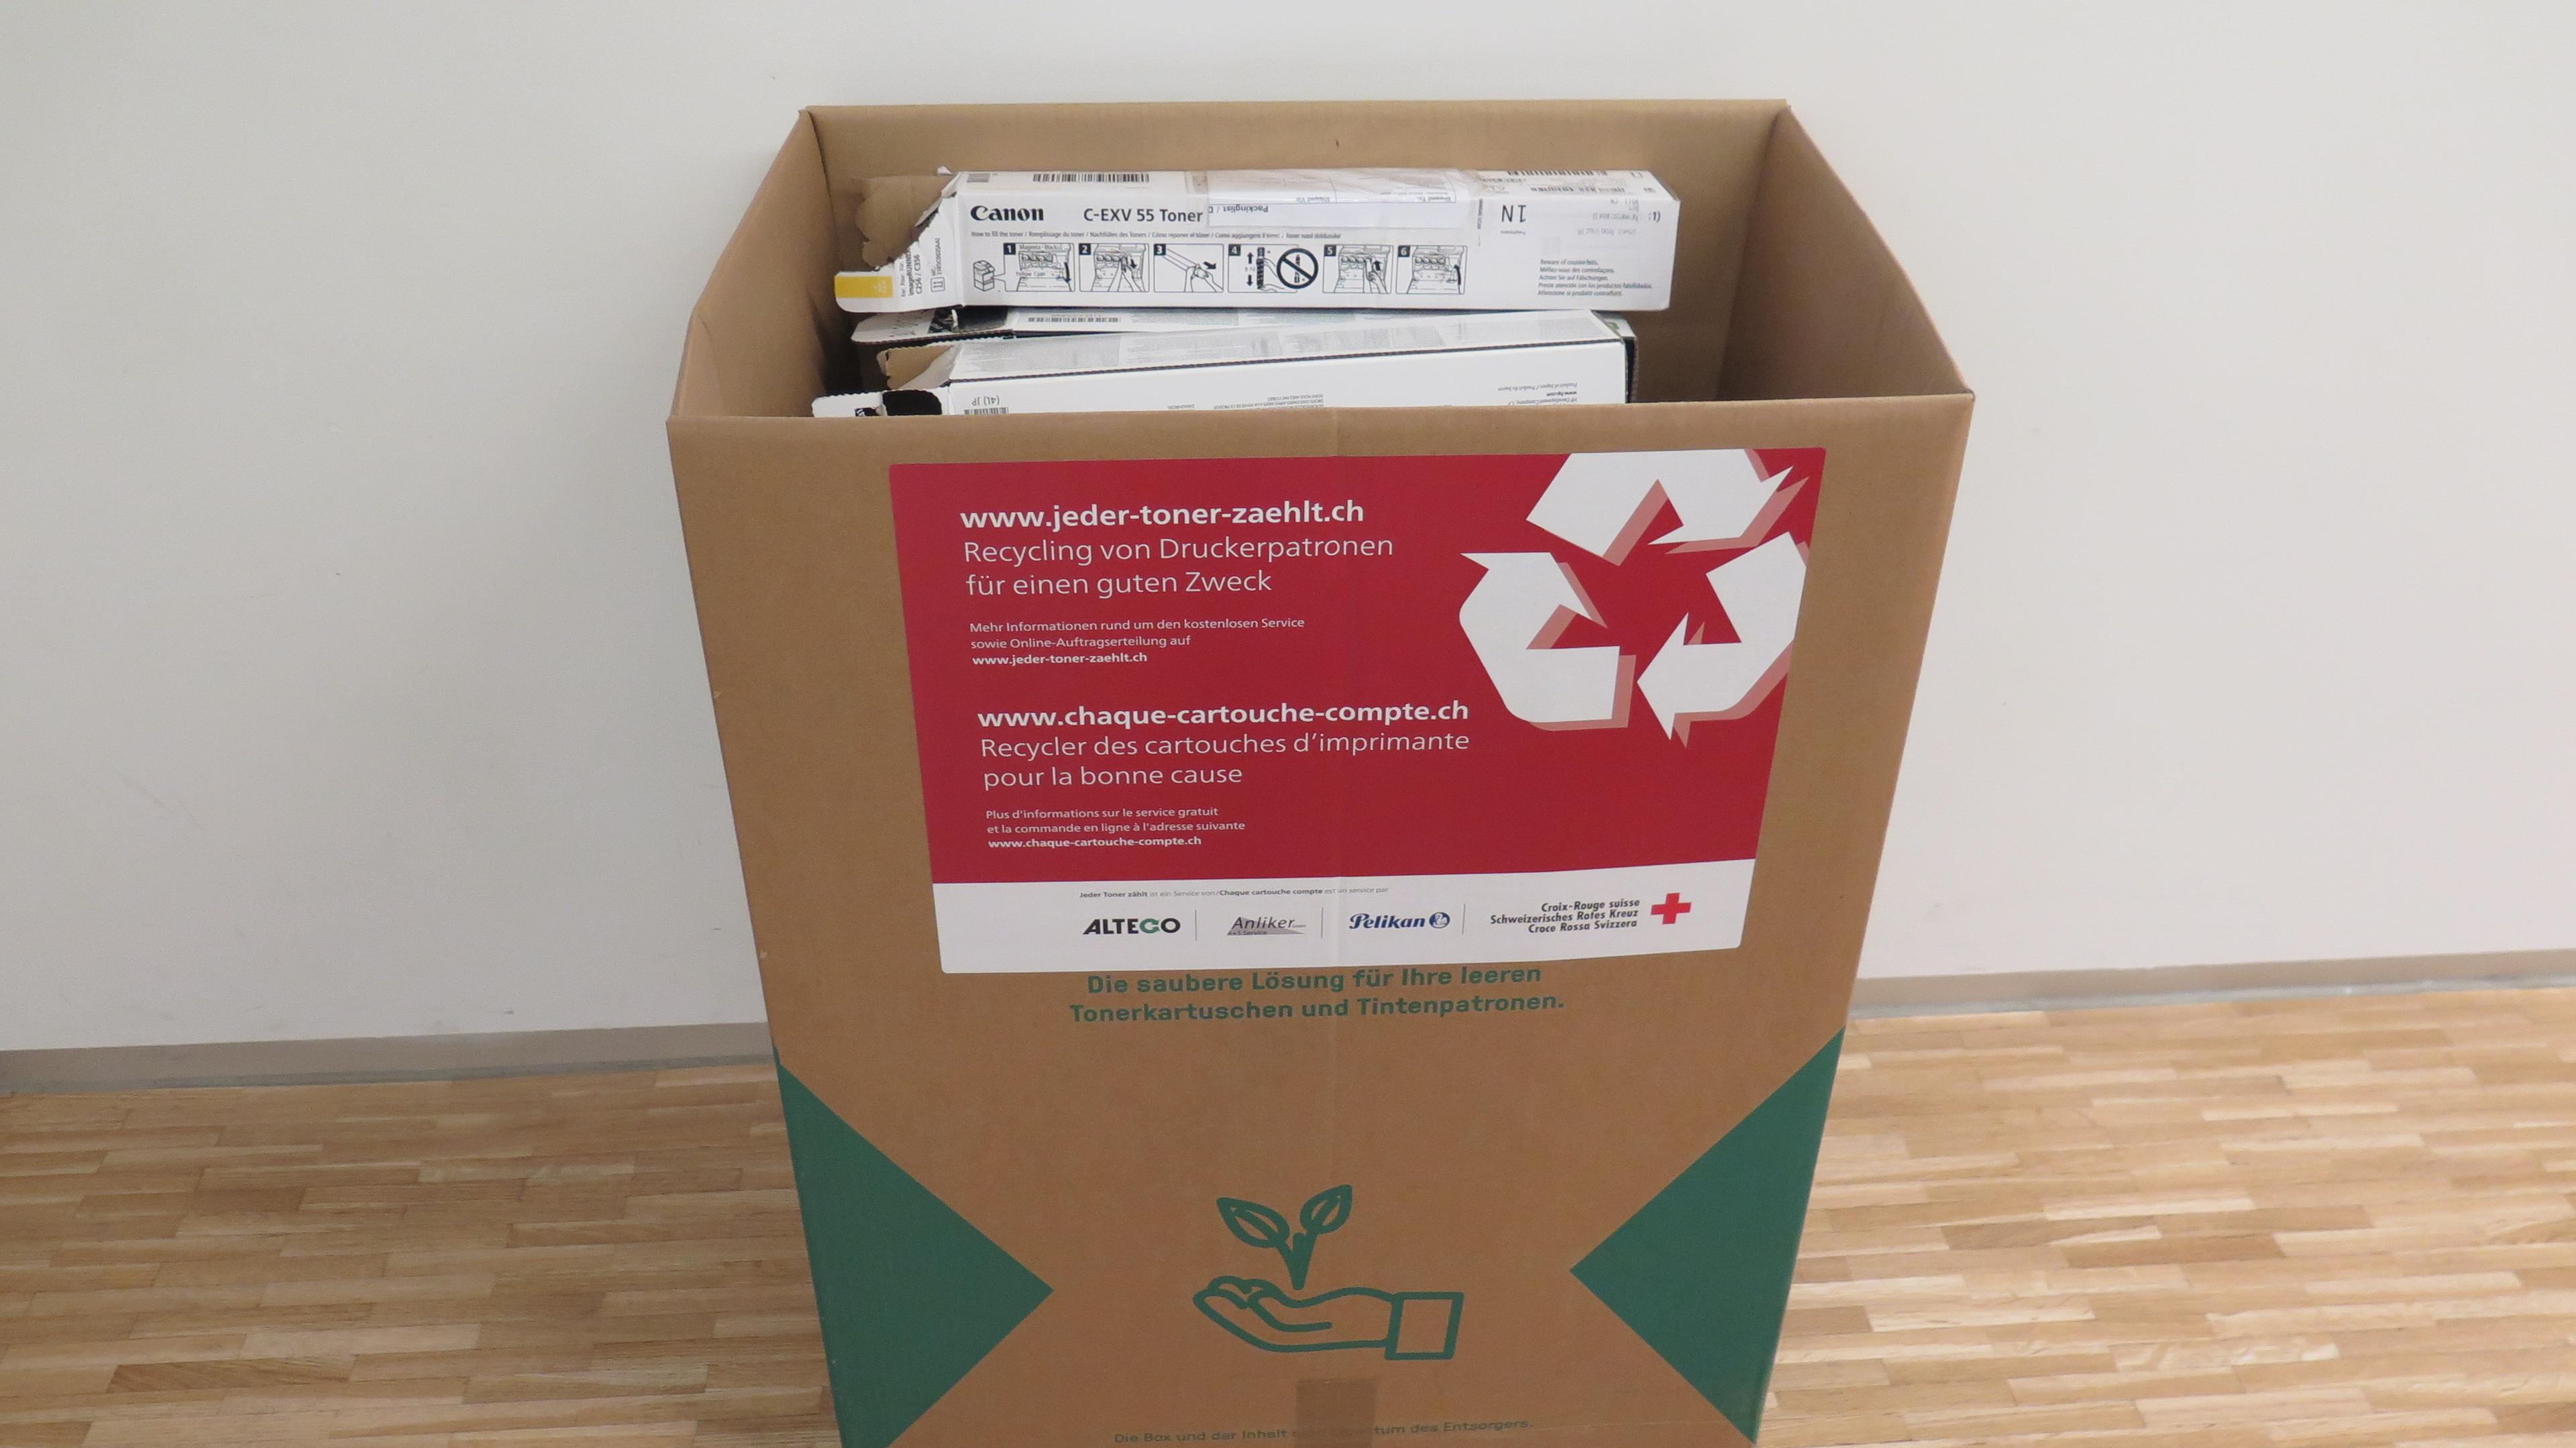 Boîte de collecte en carton pour la campagne "Chaque toner compte" avec des informations sur la campagne.